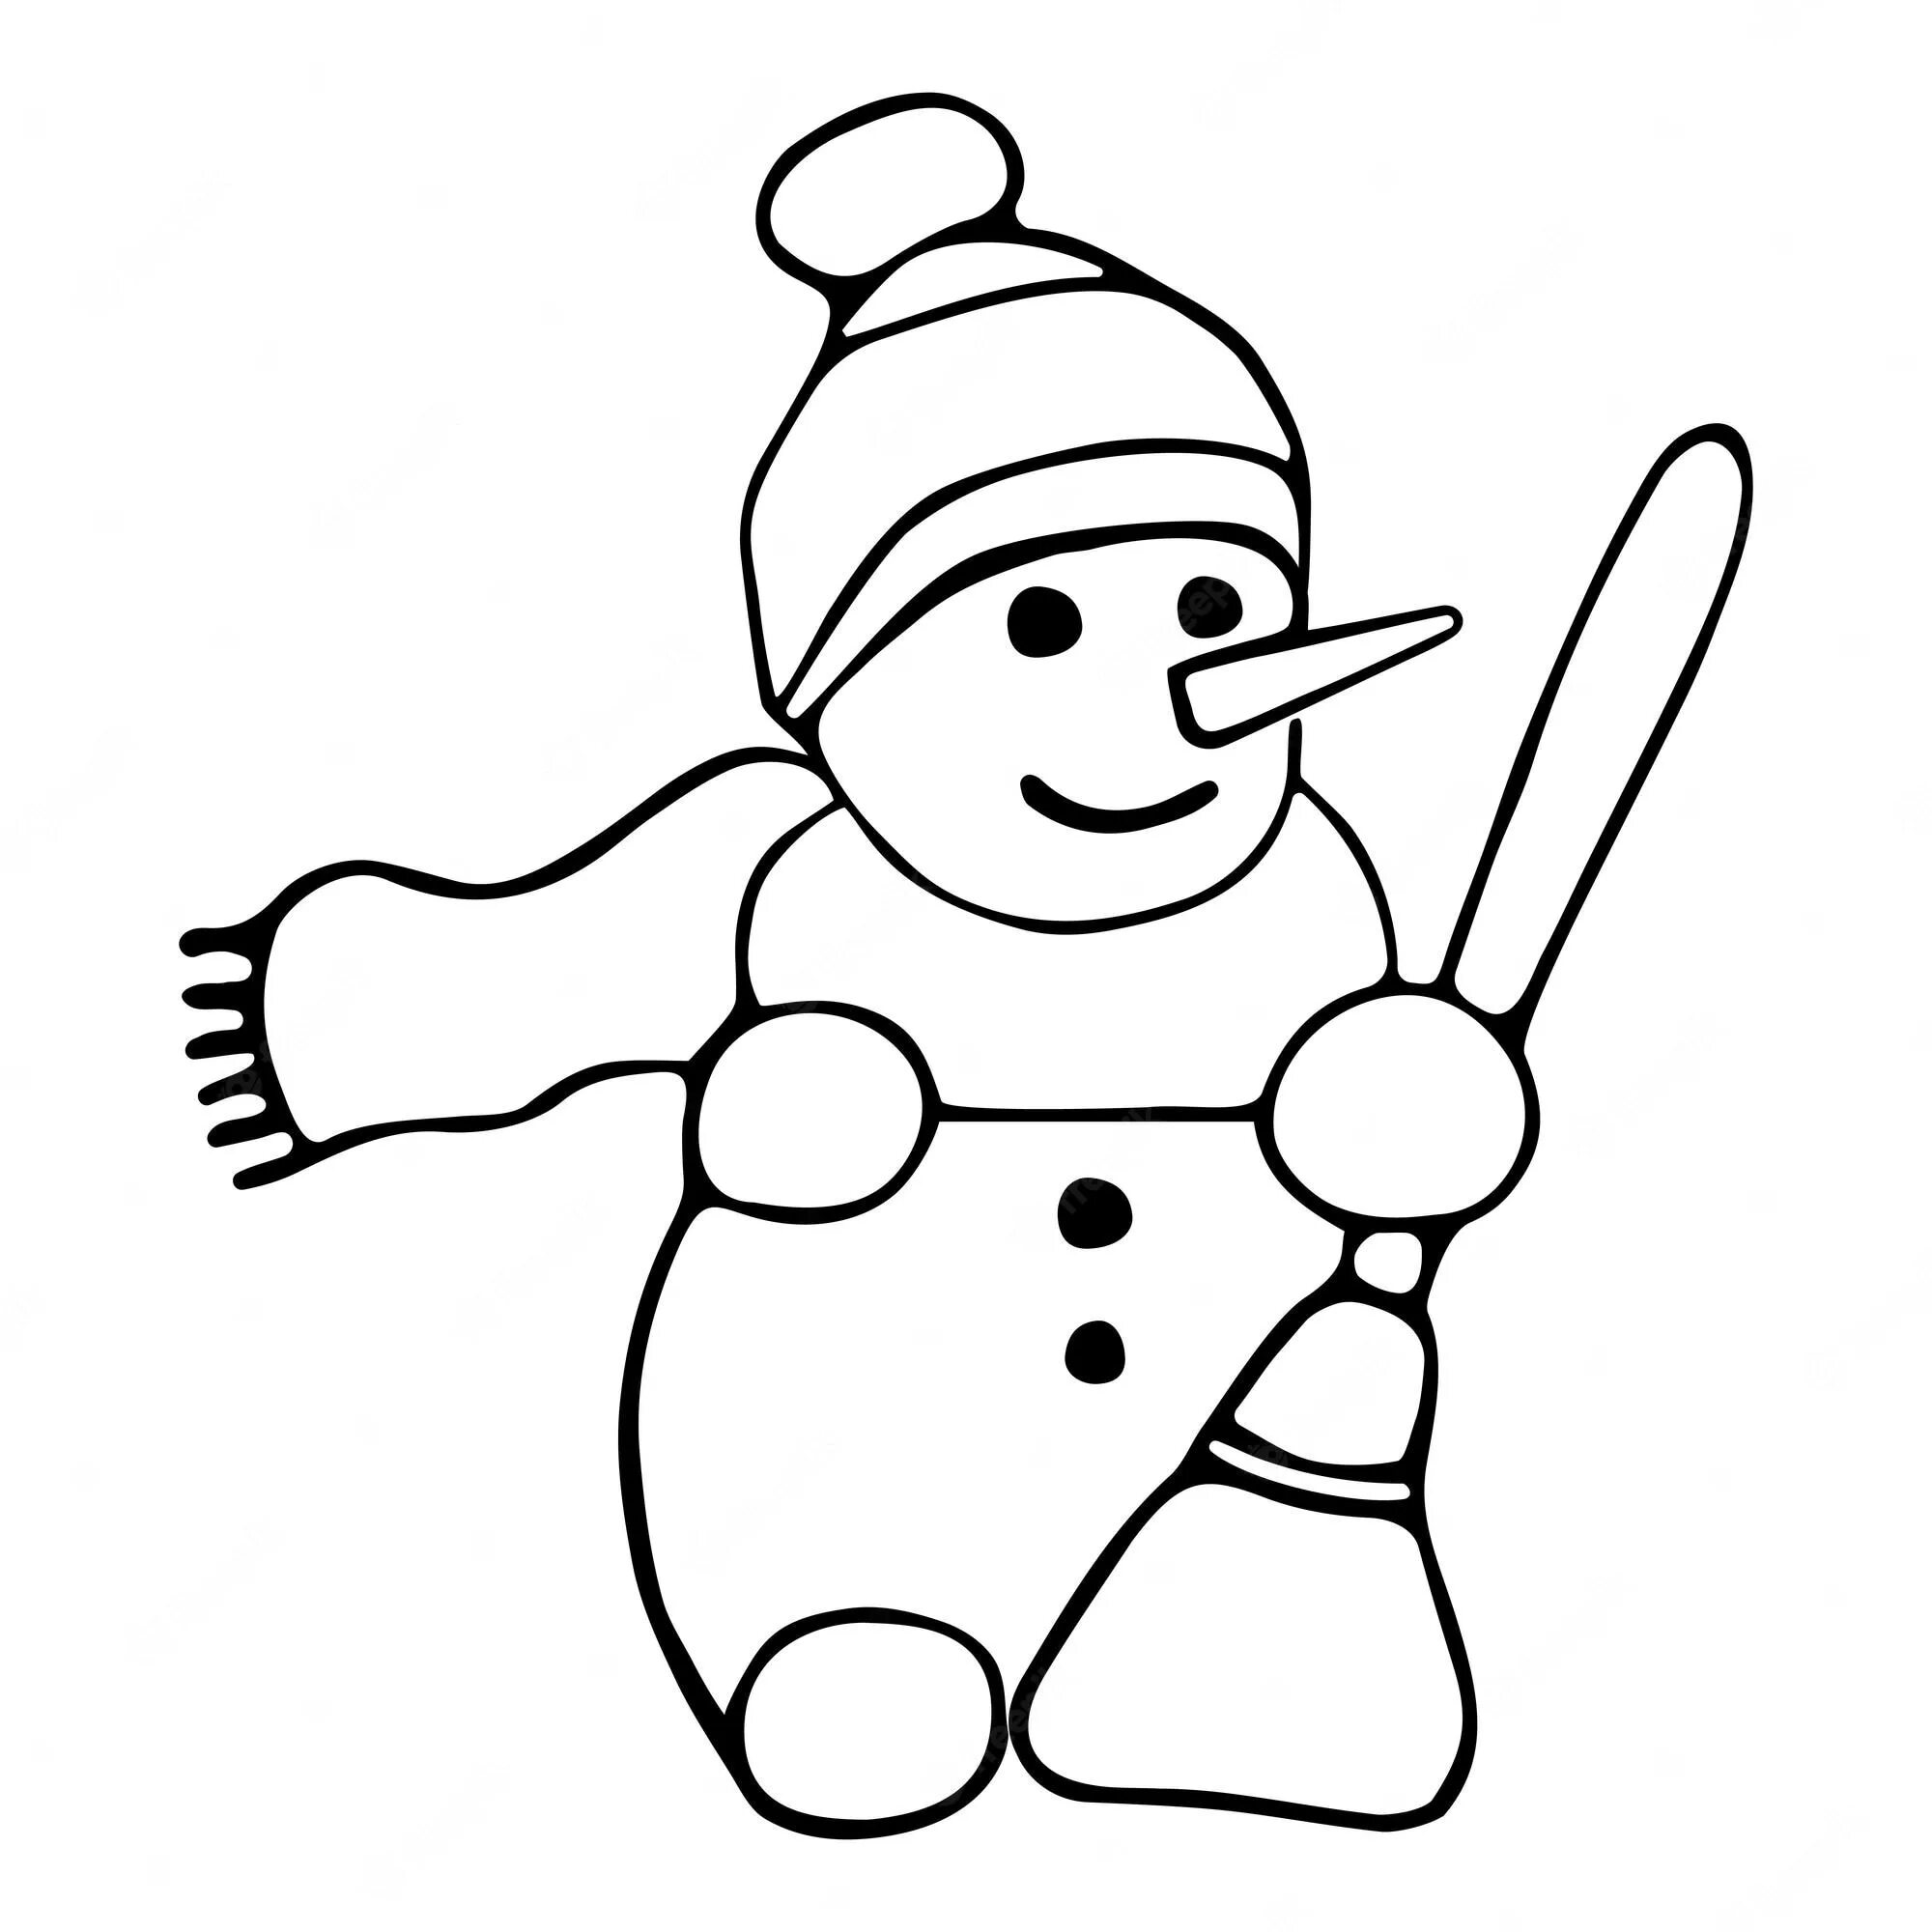 Skating snowman #4